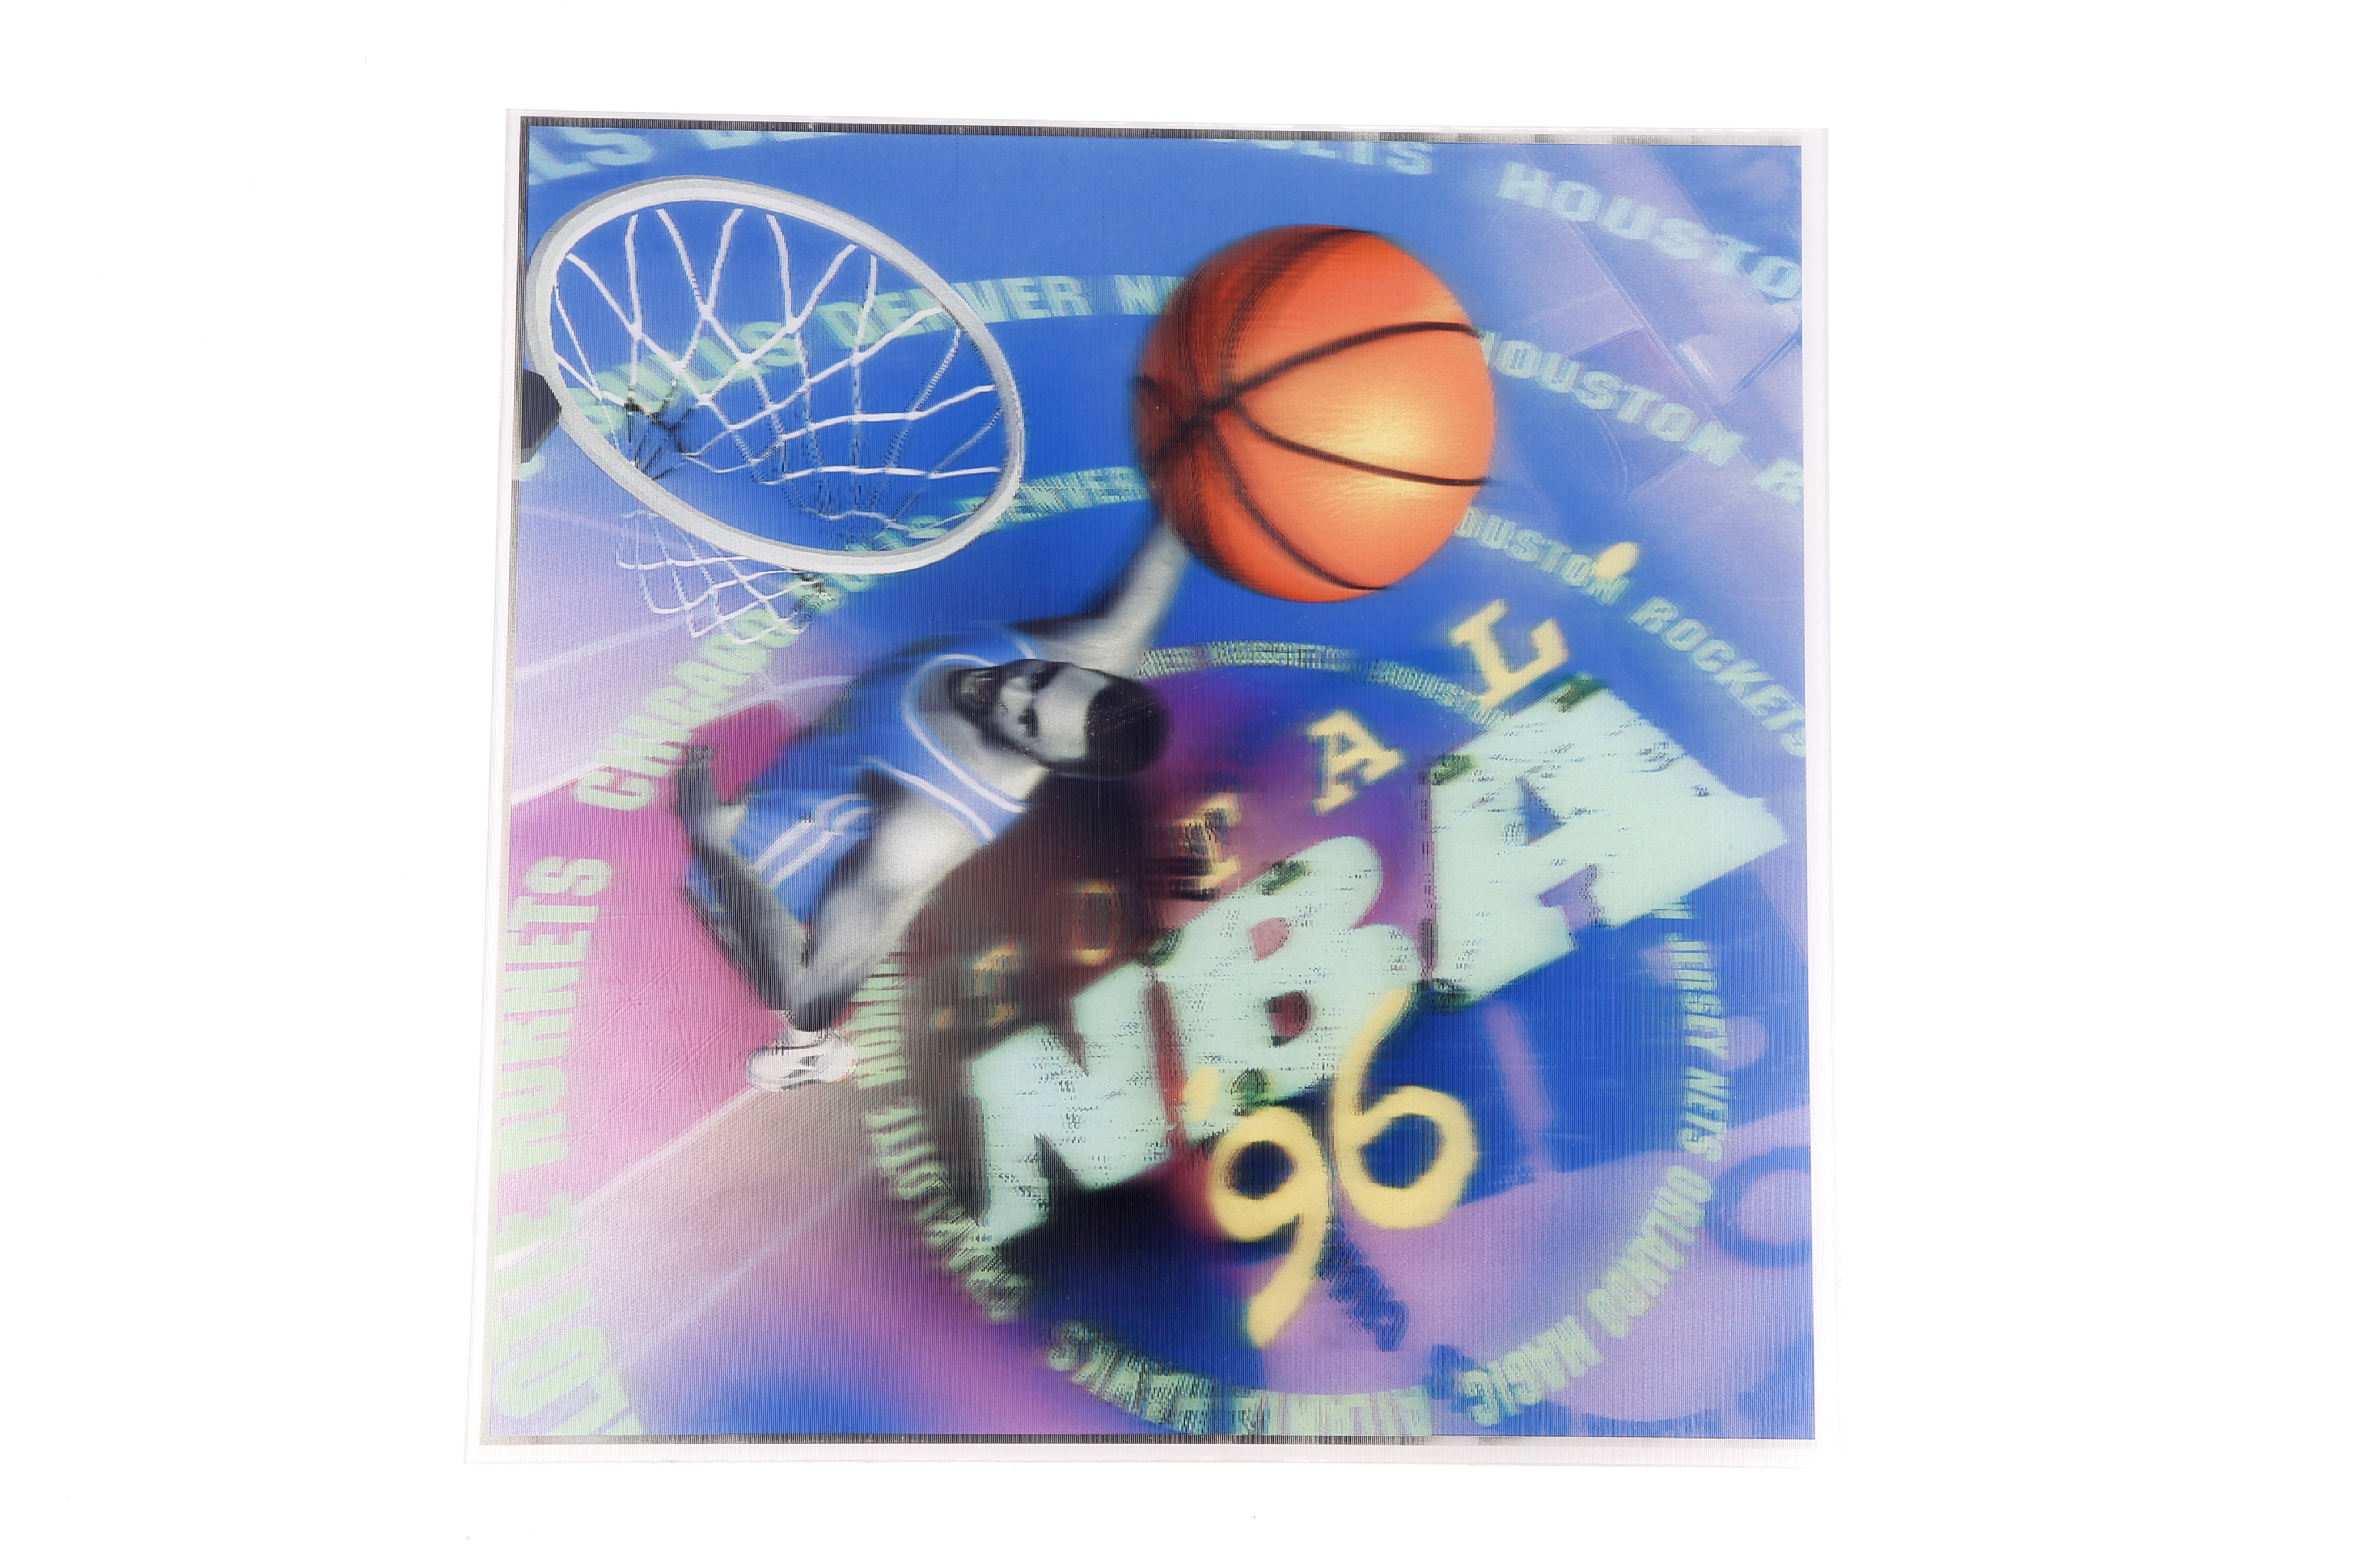 3D Lenticular Design Poster for Playstation Total NBA 96,